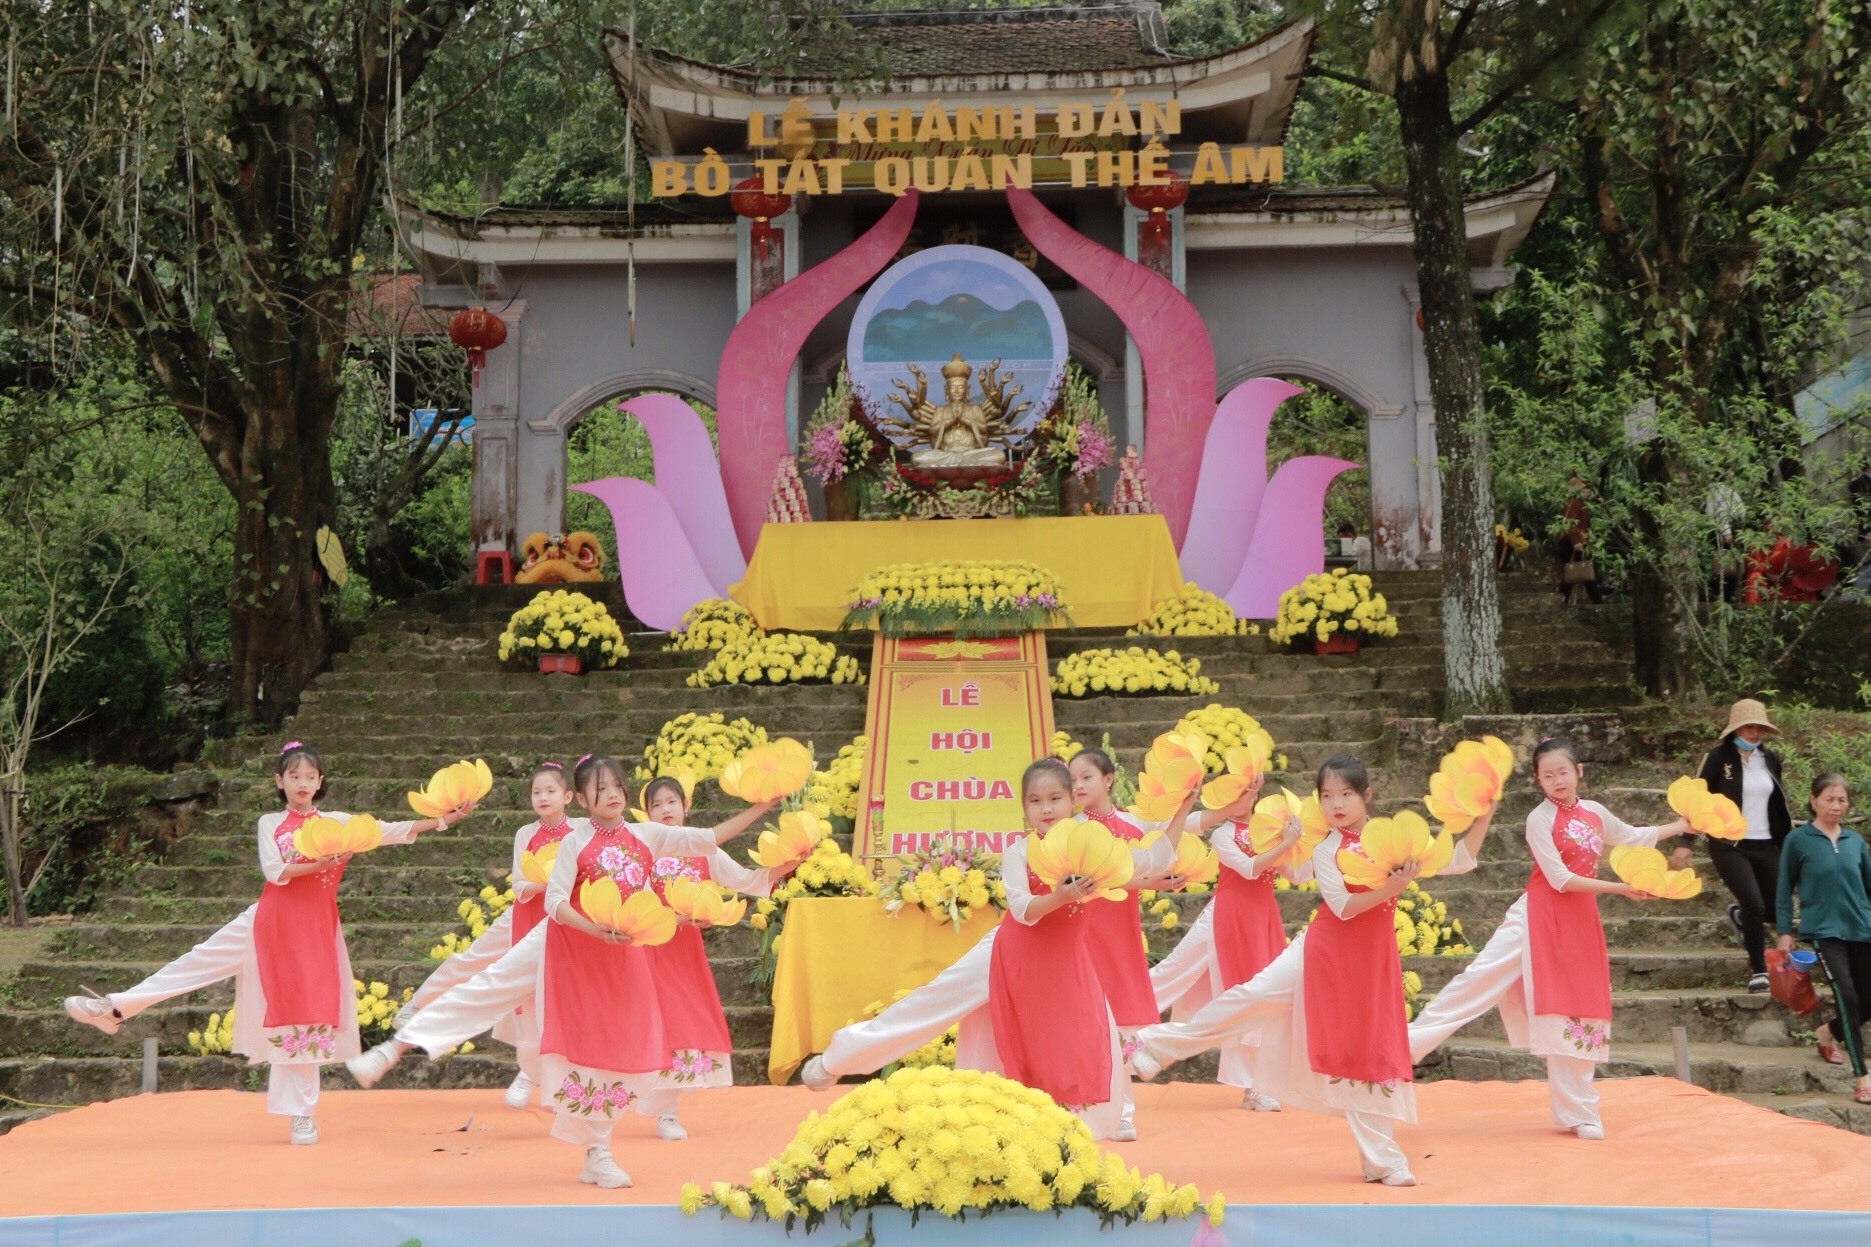 Lễ khánh đản được tổ chức vào ngày 18.2 âm lịch hàng năm tại chùa Hương Tích. Ảnh: Hải Đăng